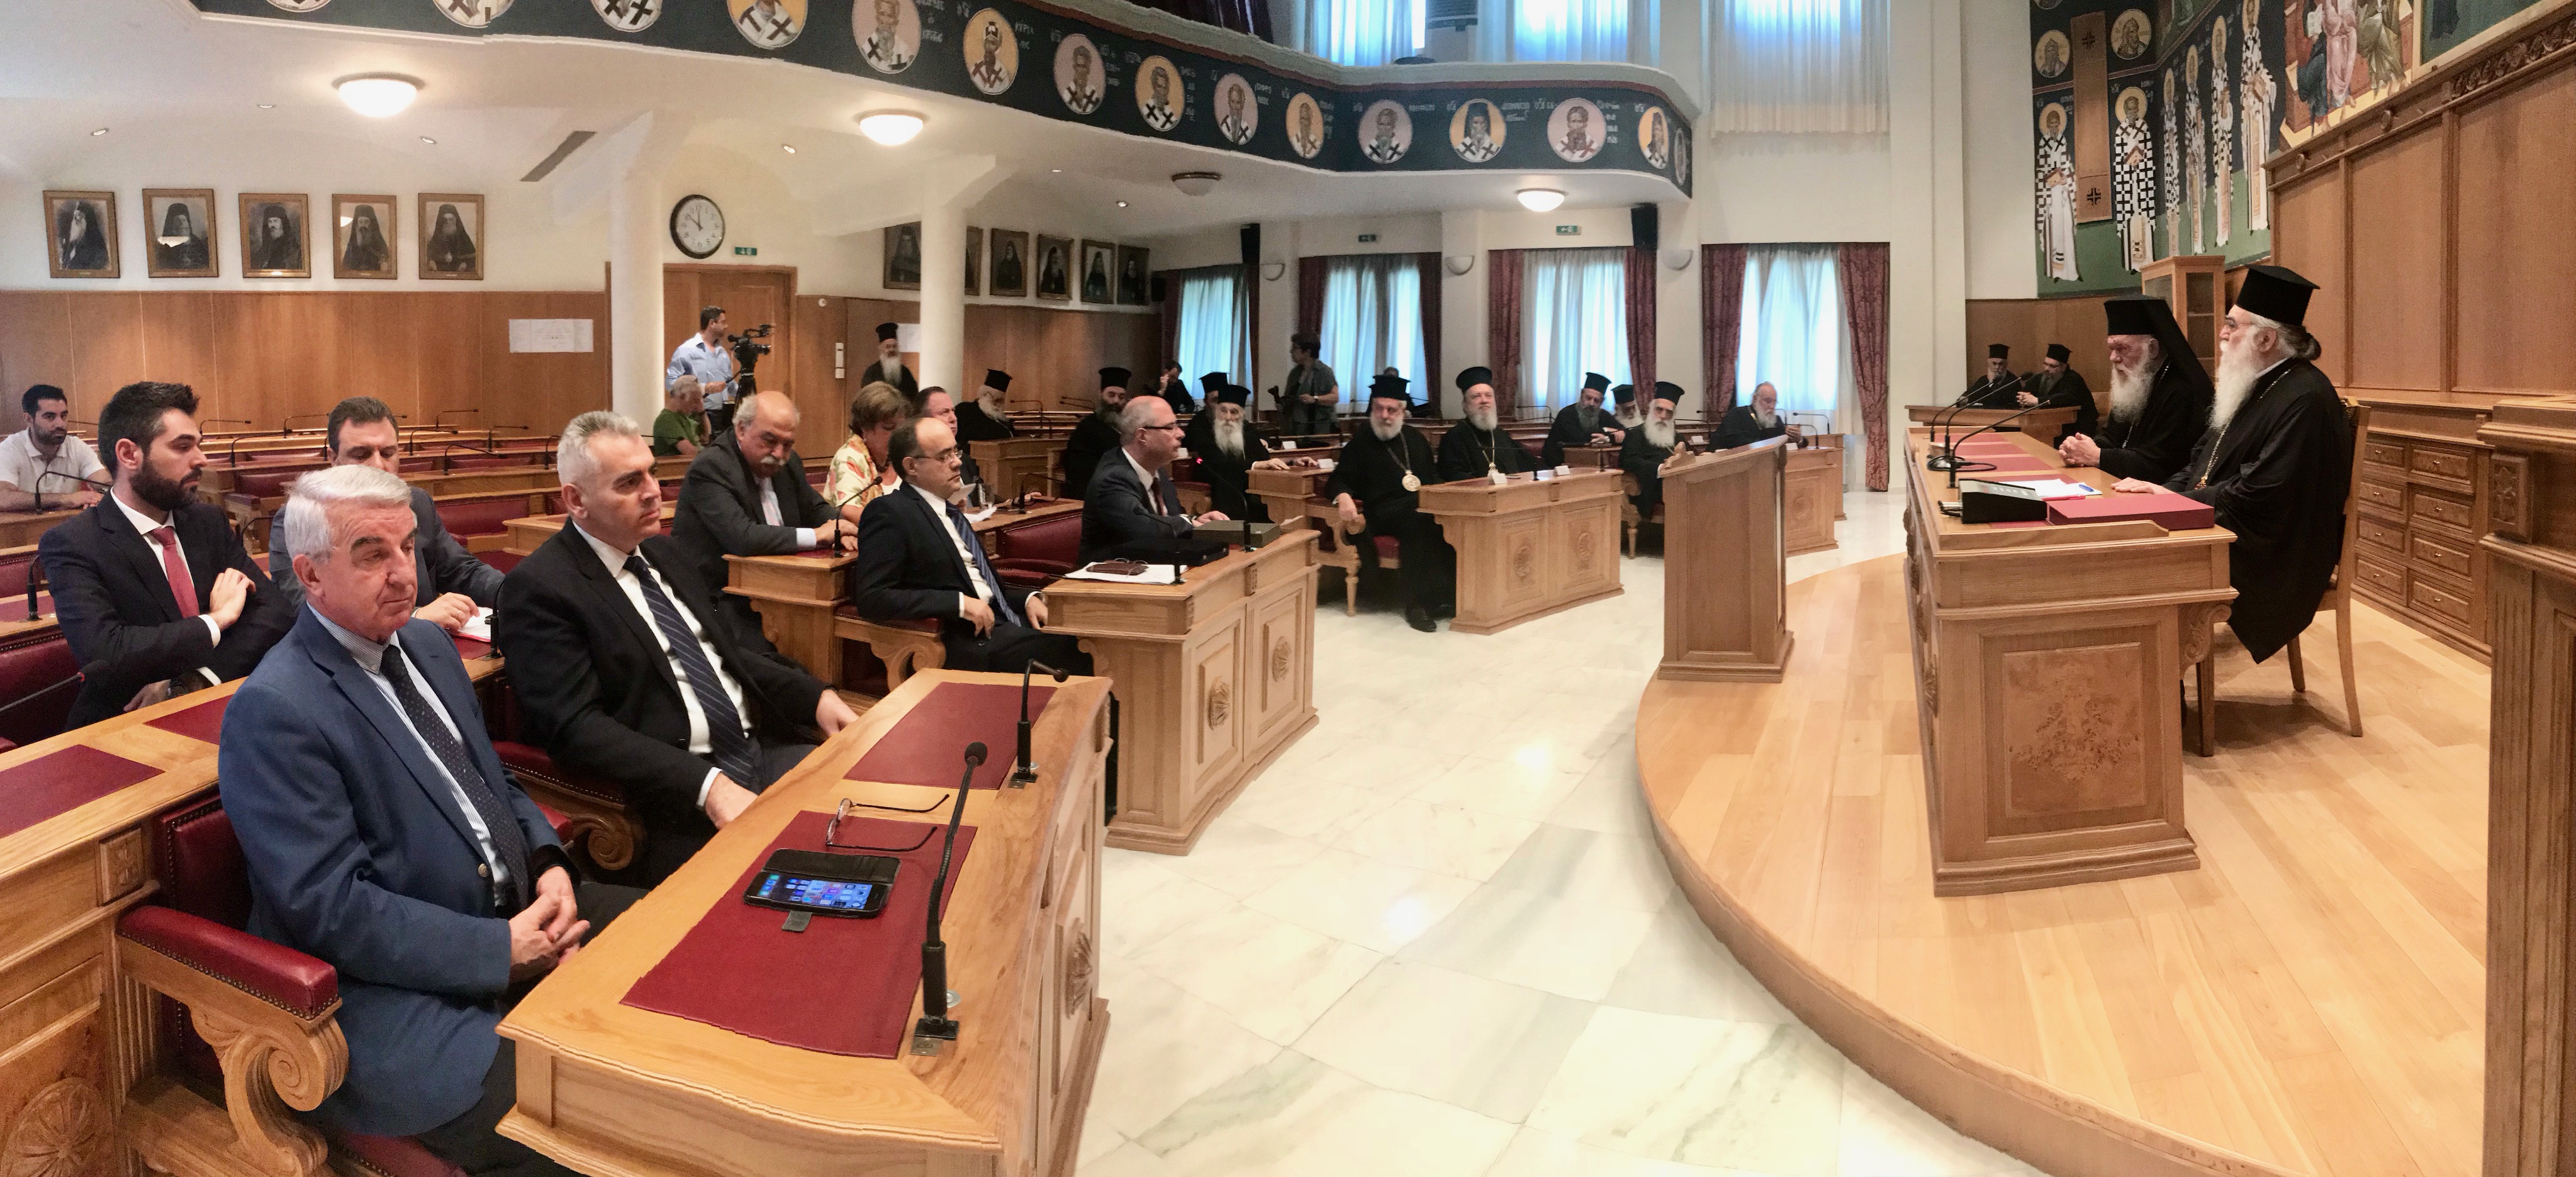 Χαρακόπουλος: "Αναβαθμίζεται ο ρόλος της Διακοινοβουλευτικής Συνέλευσης Ορθοδοξίας"